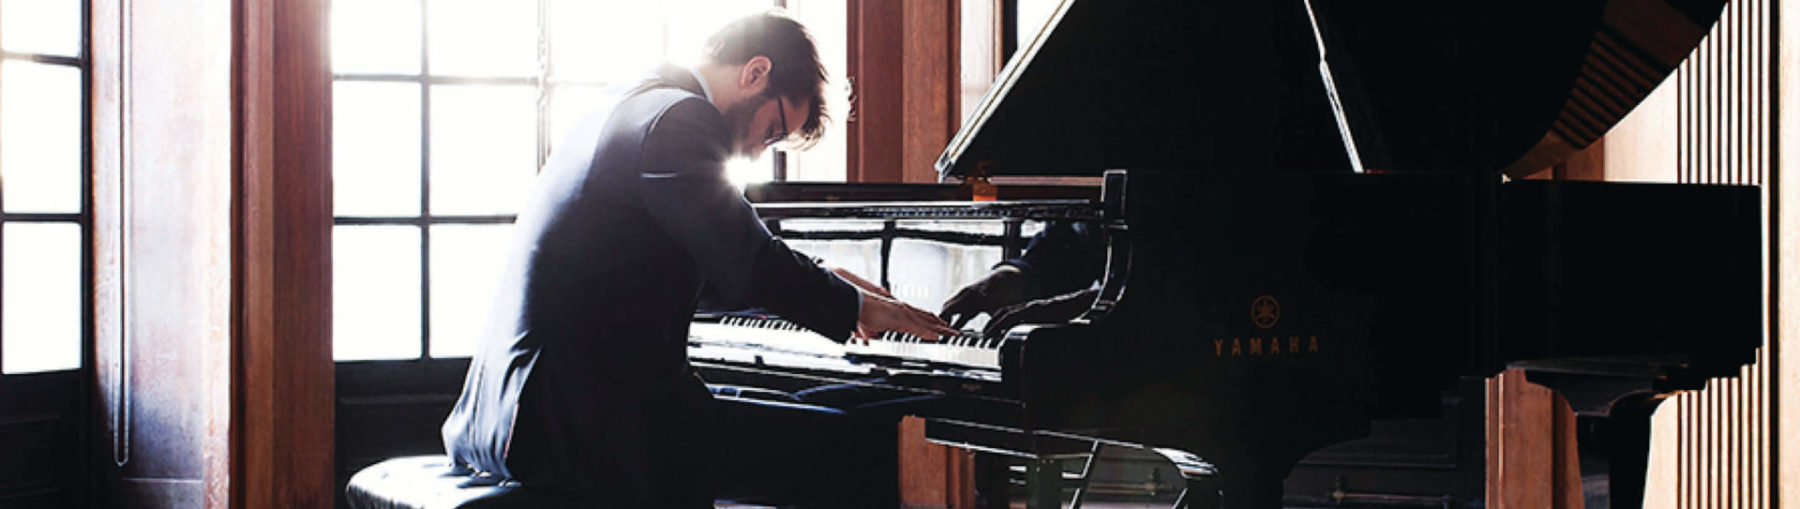 David Kaplan playing the piano